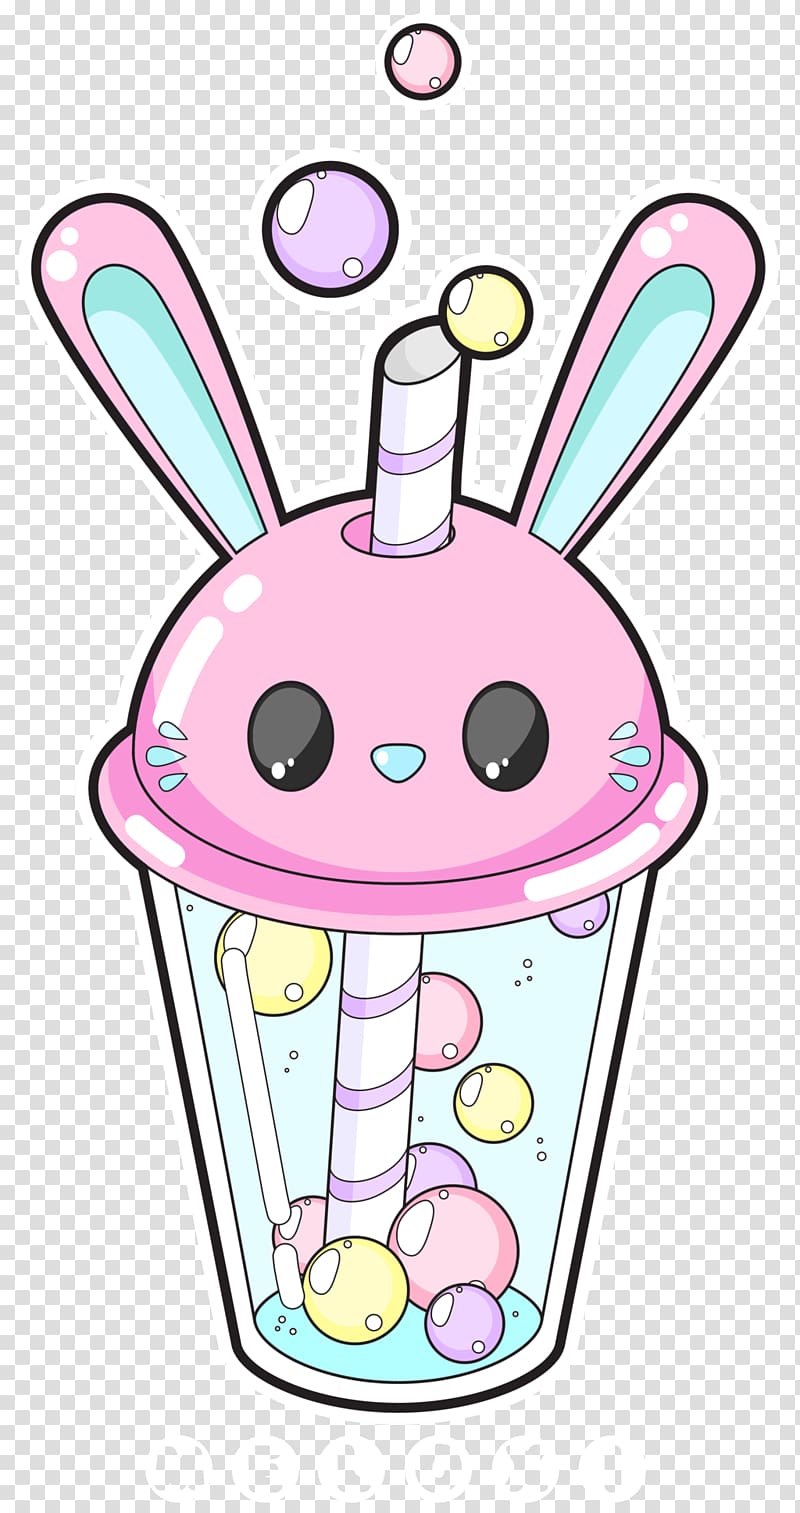 Bubble tea Milk Kavaii Rabbit, bubble tea transparent background PNG clipart